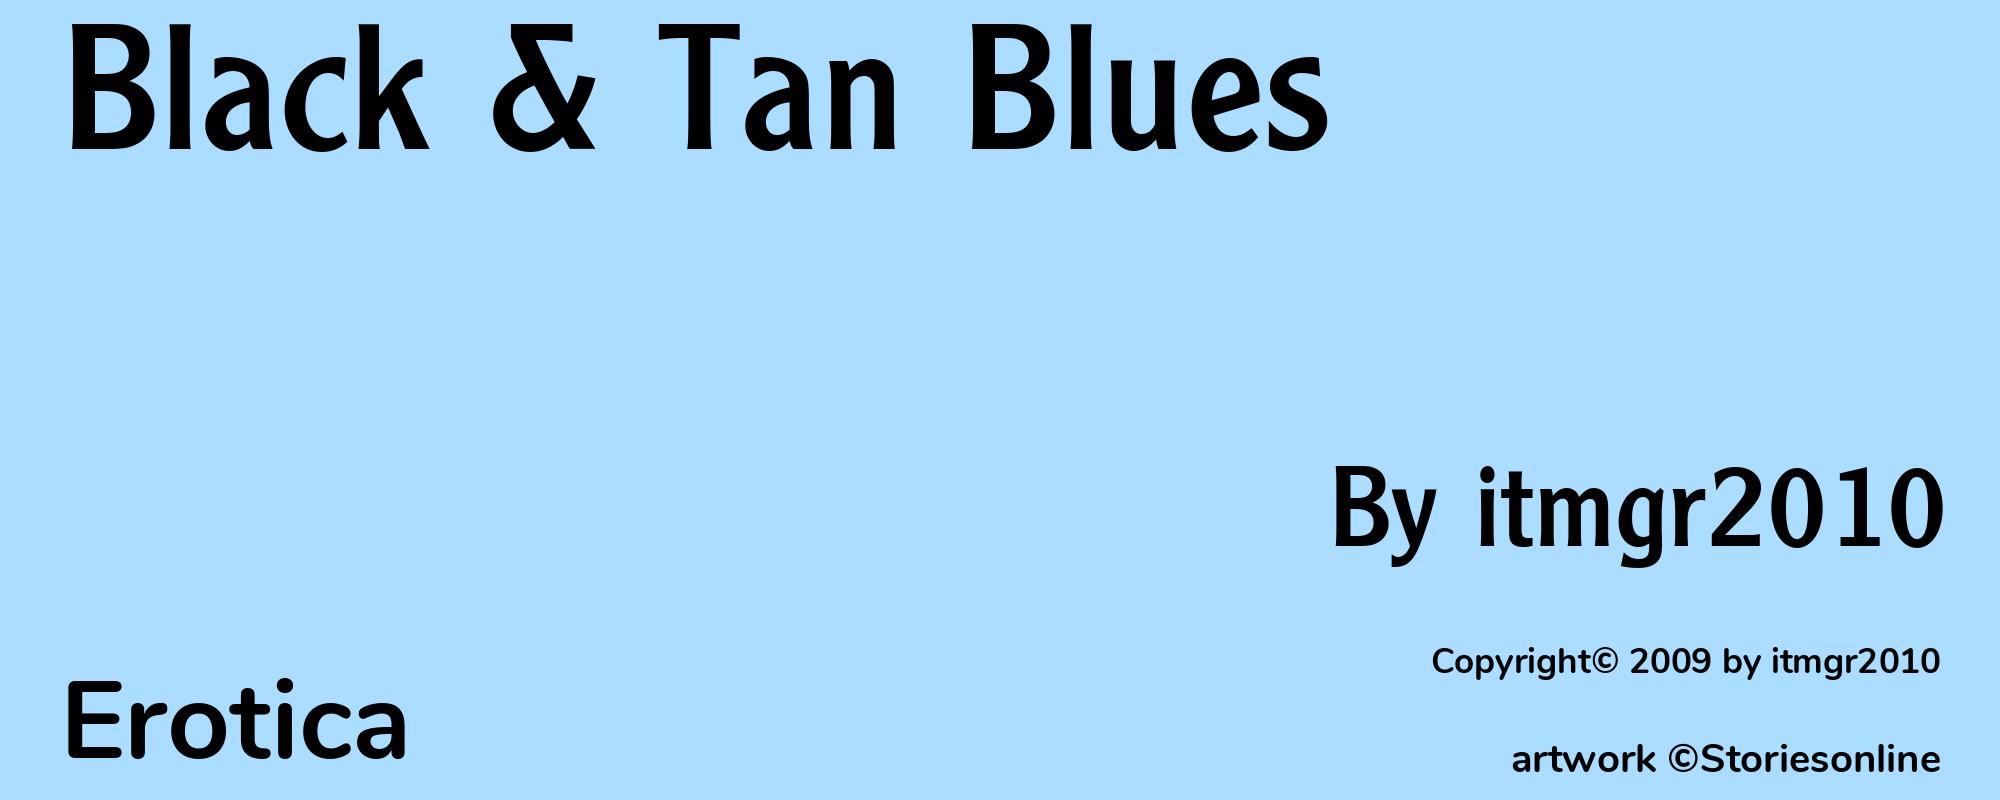 Black & Tan Blues - Cover